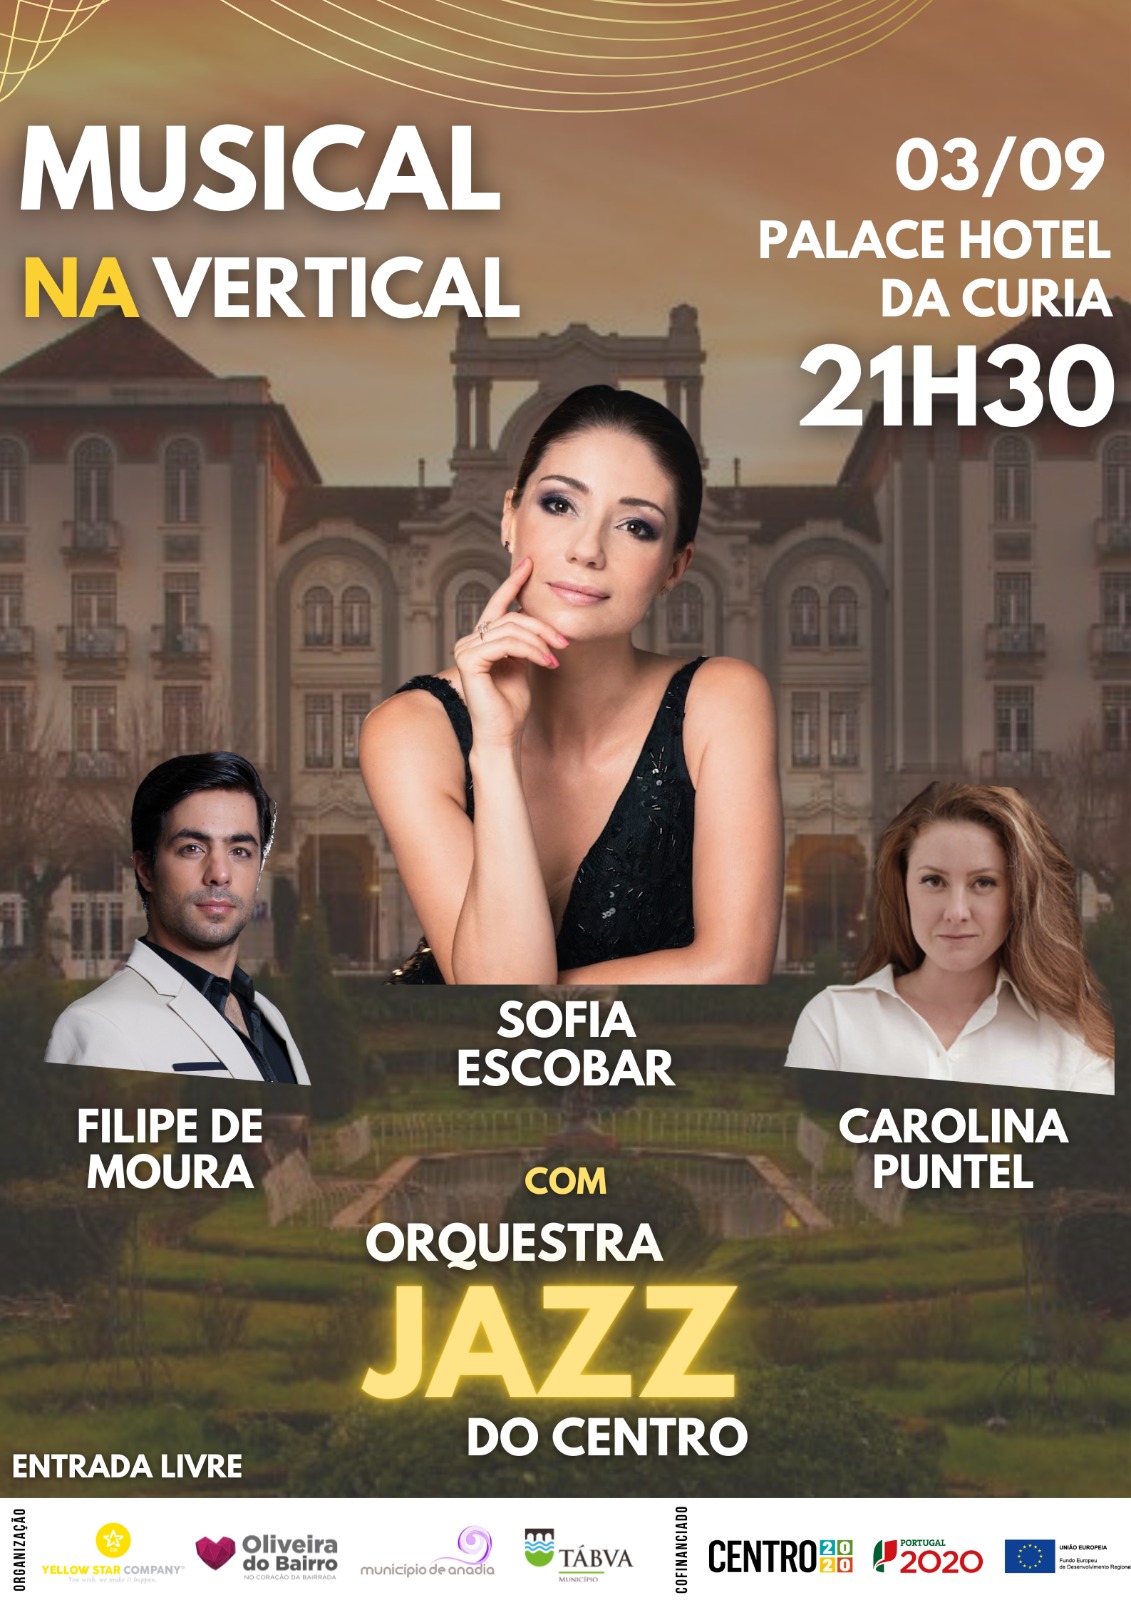 3 Setembro 2022 - Orquestra Jazz do Centro - Musical na Vertical - Com Filipe de Moura, Sofia Escobar e Carolina Puntel